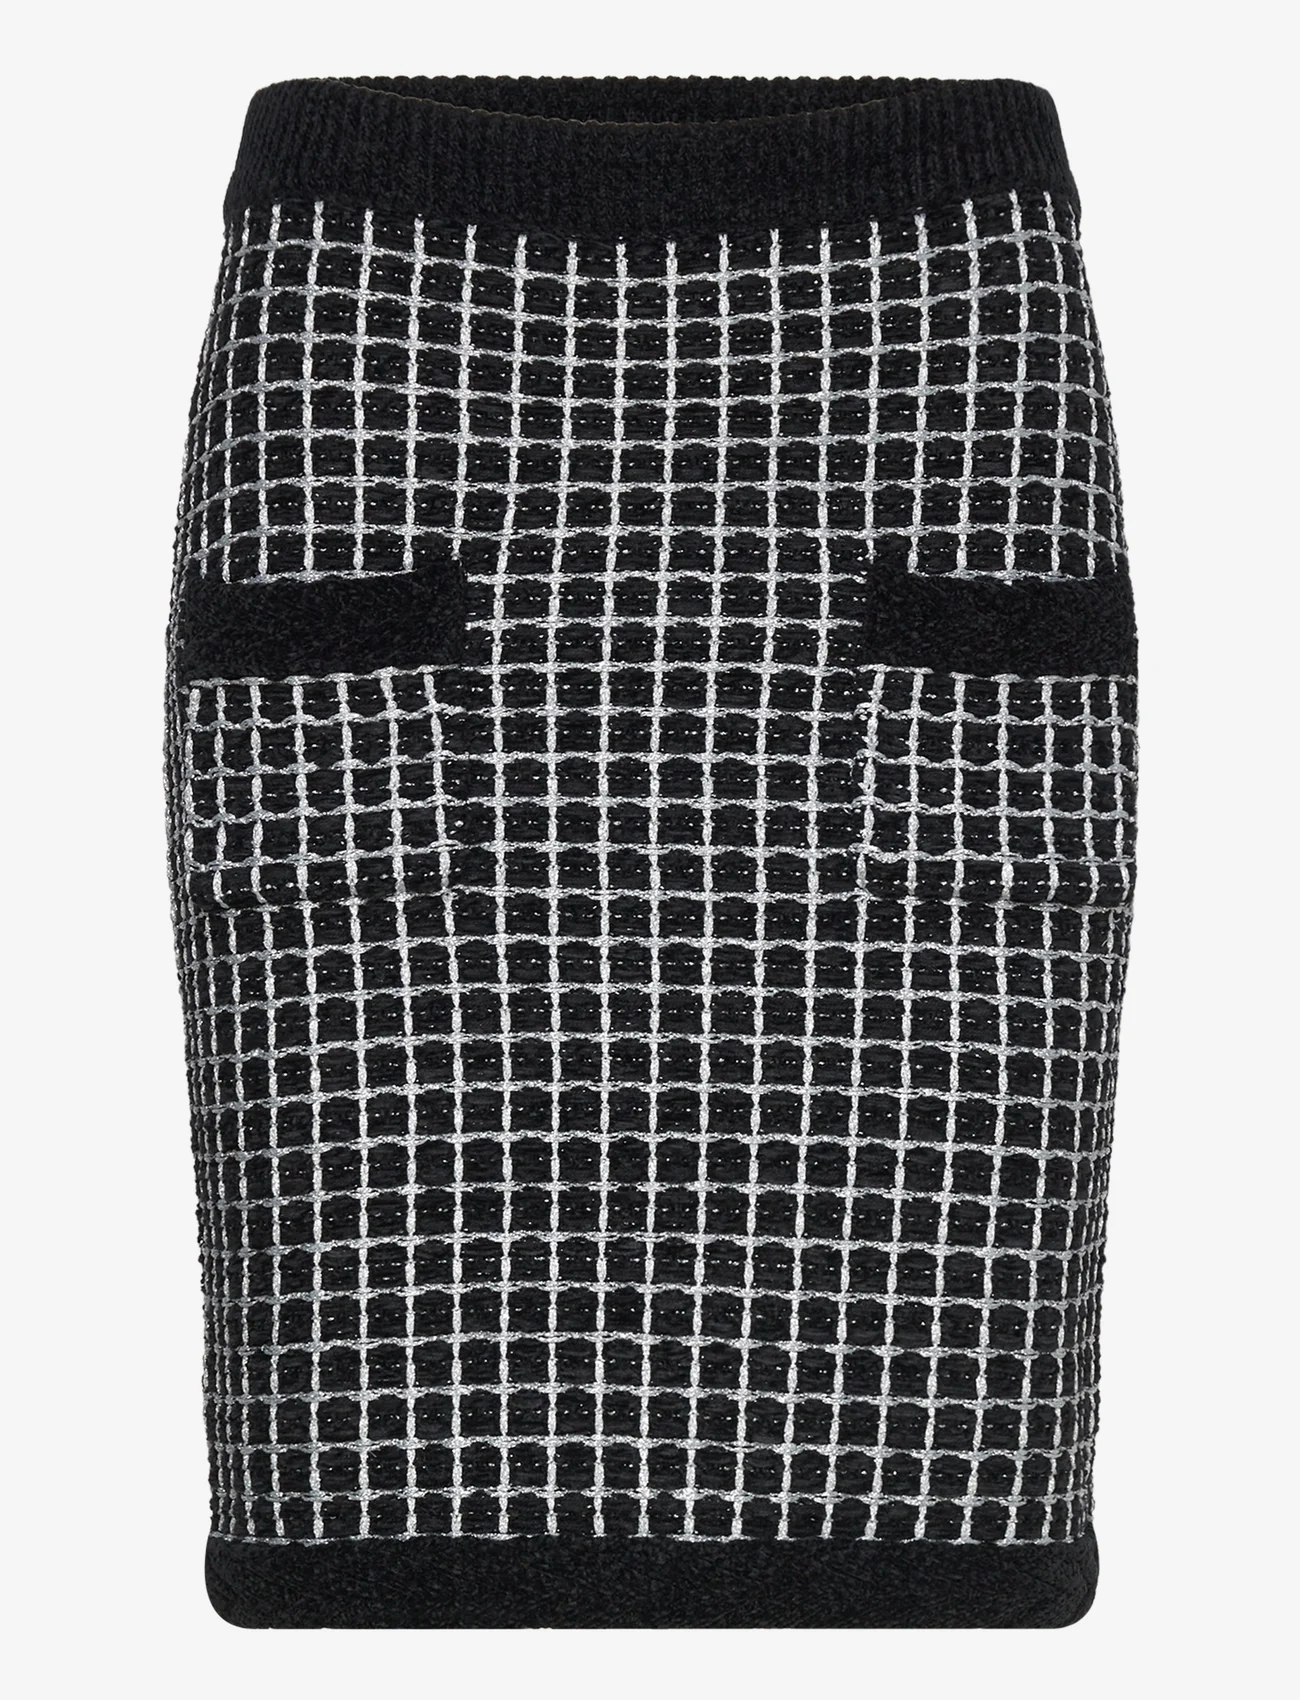 Karl Lagerfeld - boucle knit skirt - strikkede skjørt - black/silver - 0